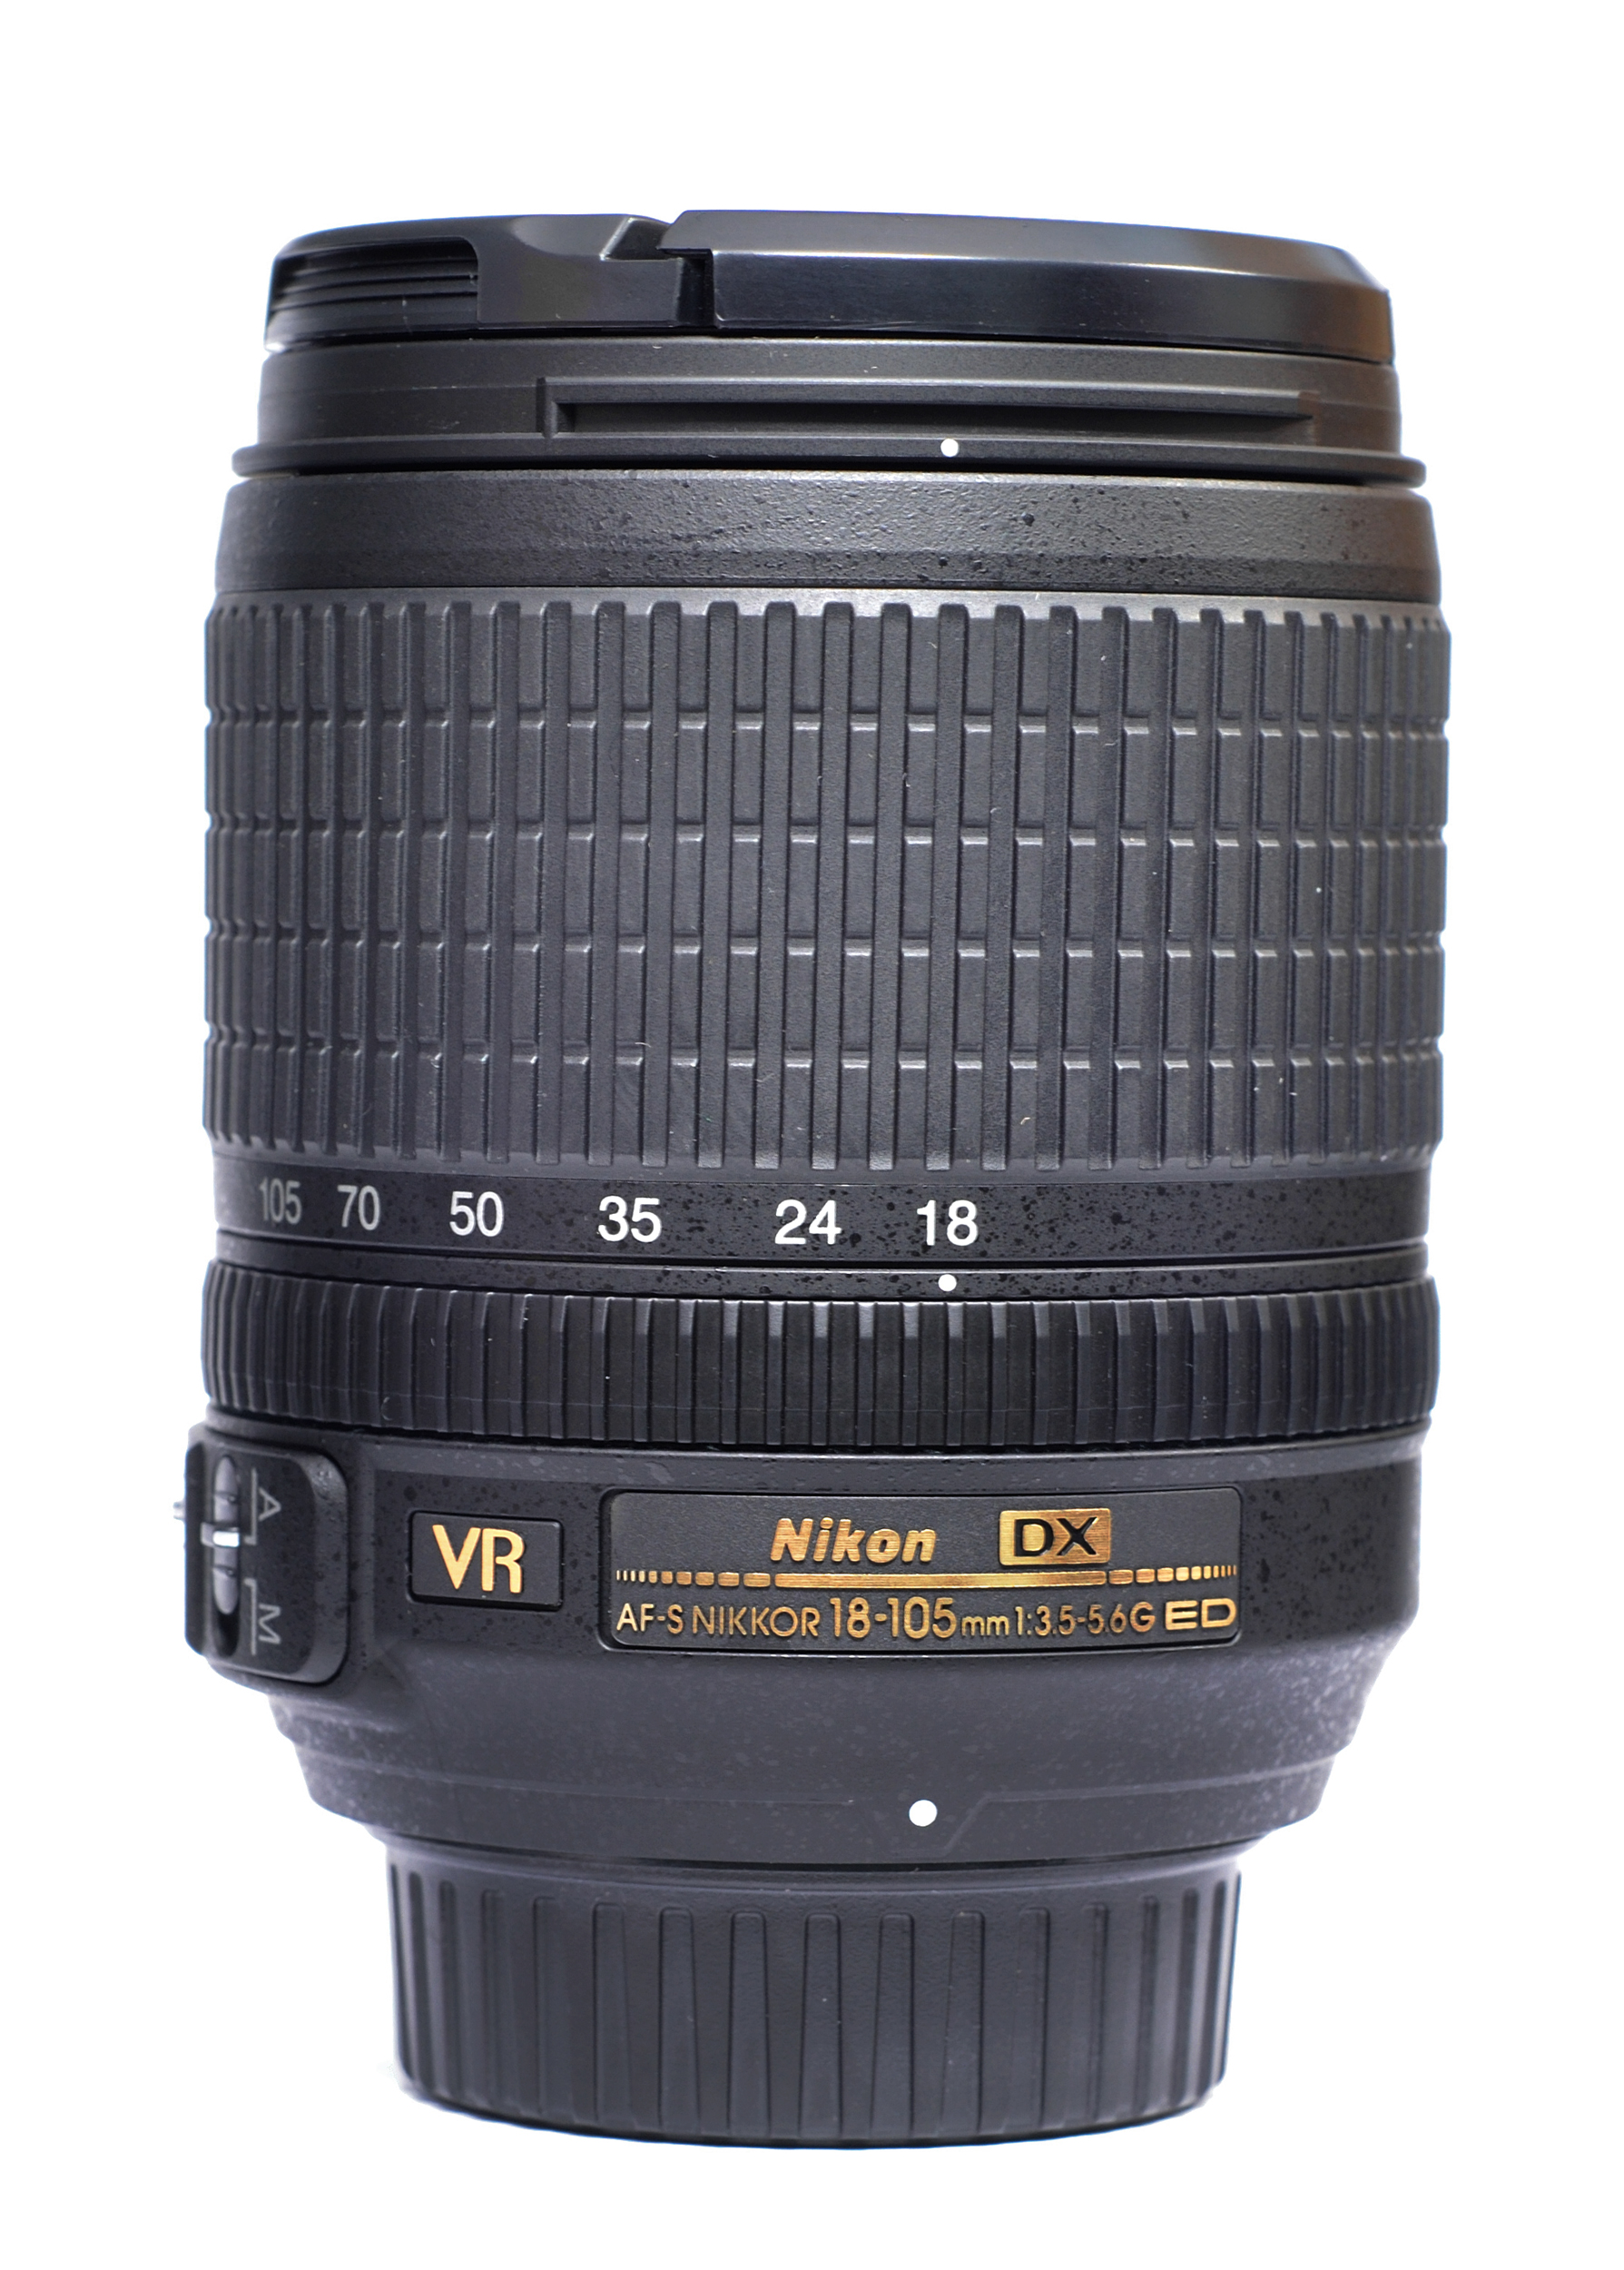 AF-S DX NIKKOR 18-105mm f3.5-5.6G ED VR lens 13 07 2012